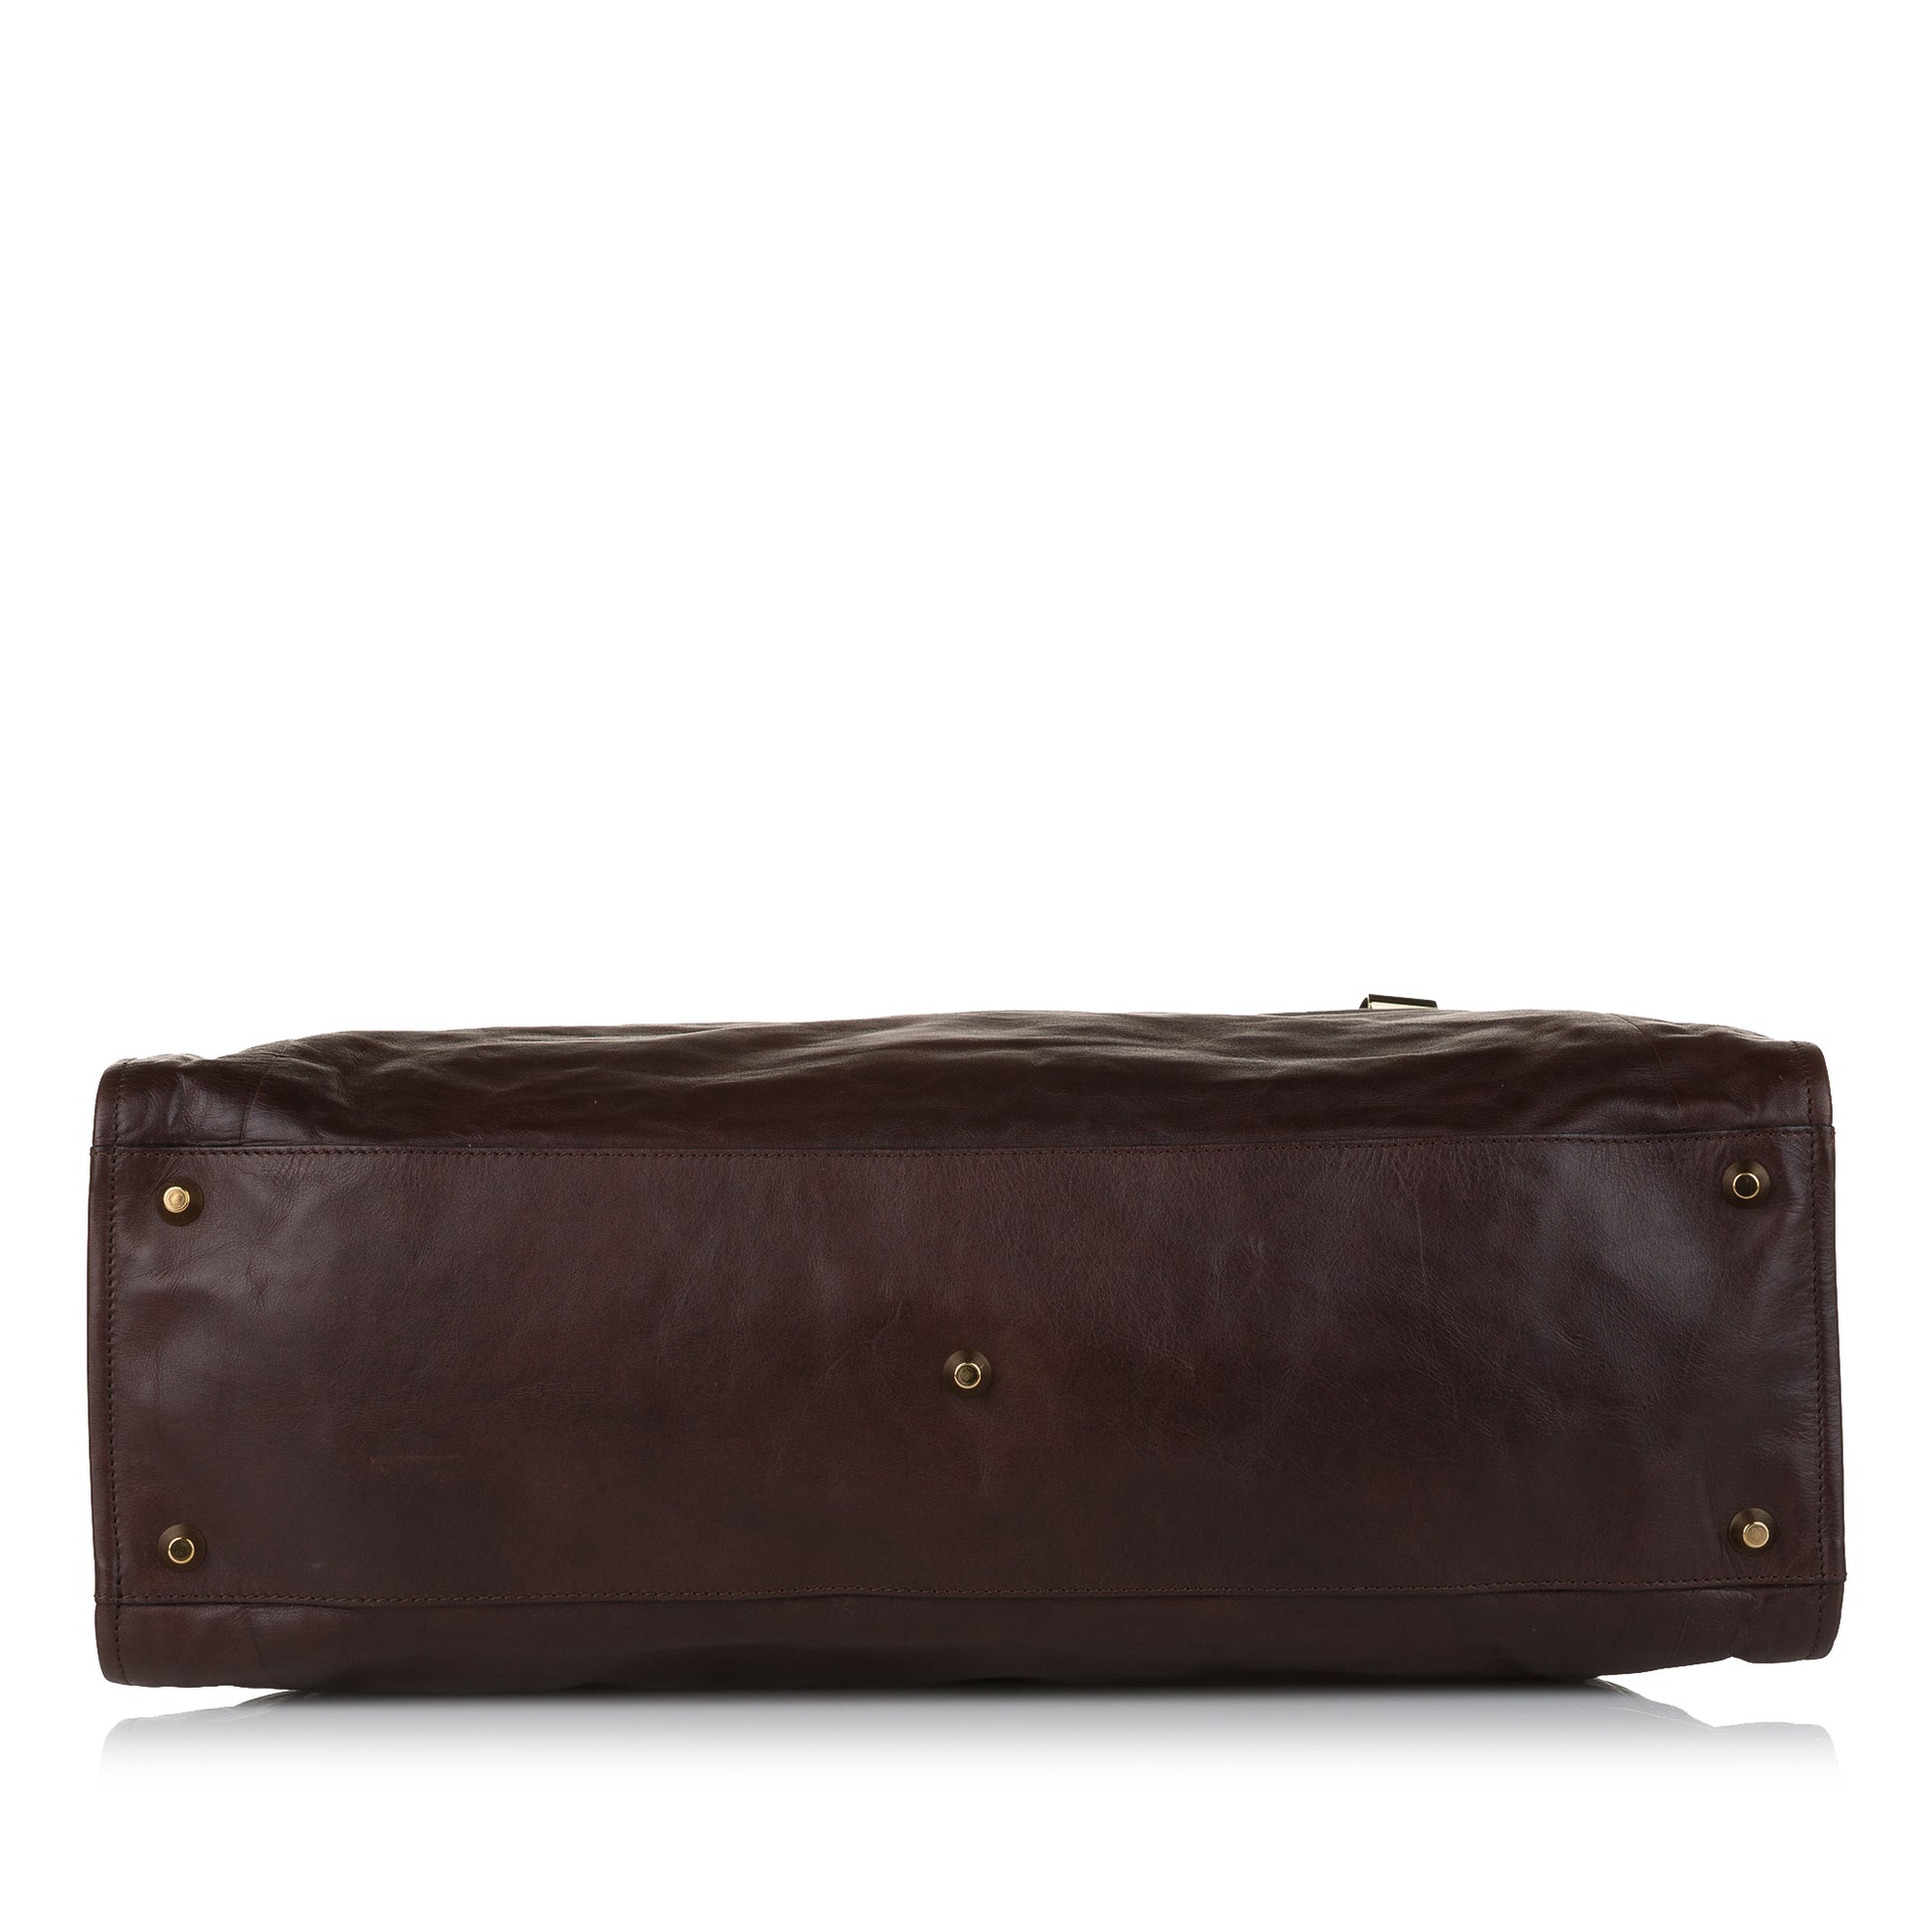 Victoria Leather Handbag Brown - Gaby Paris